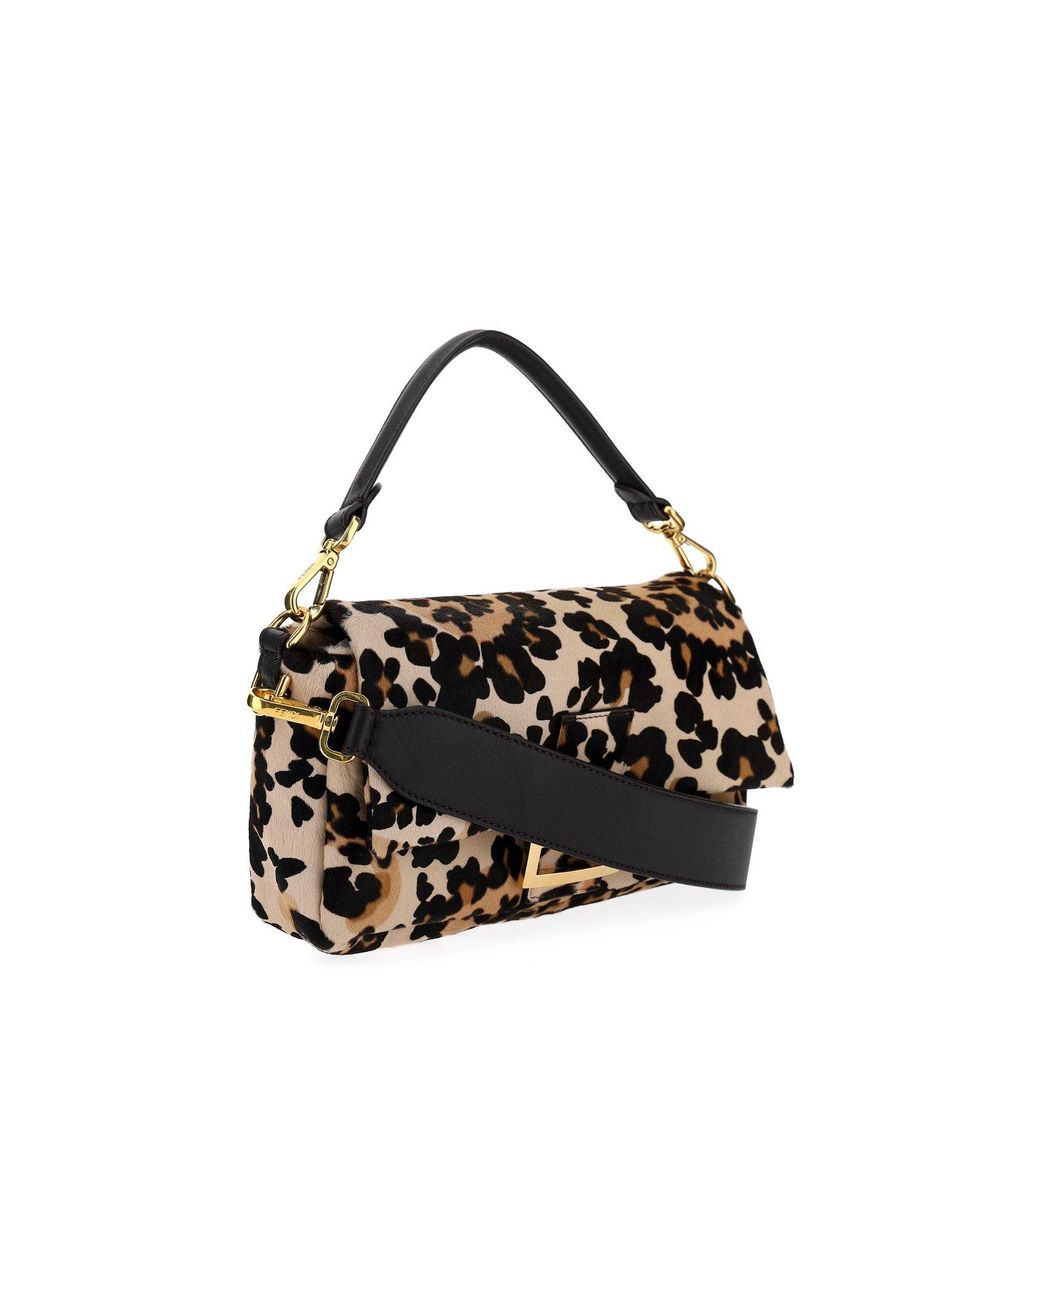 Fendi Baguette Leopard Print Shoulder Bag in Black | Lyst